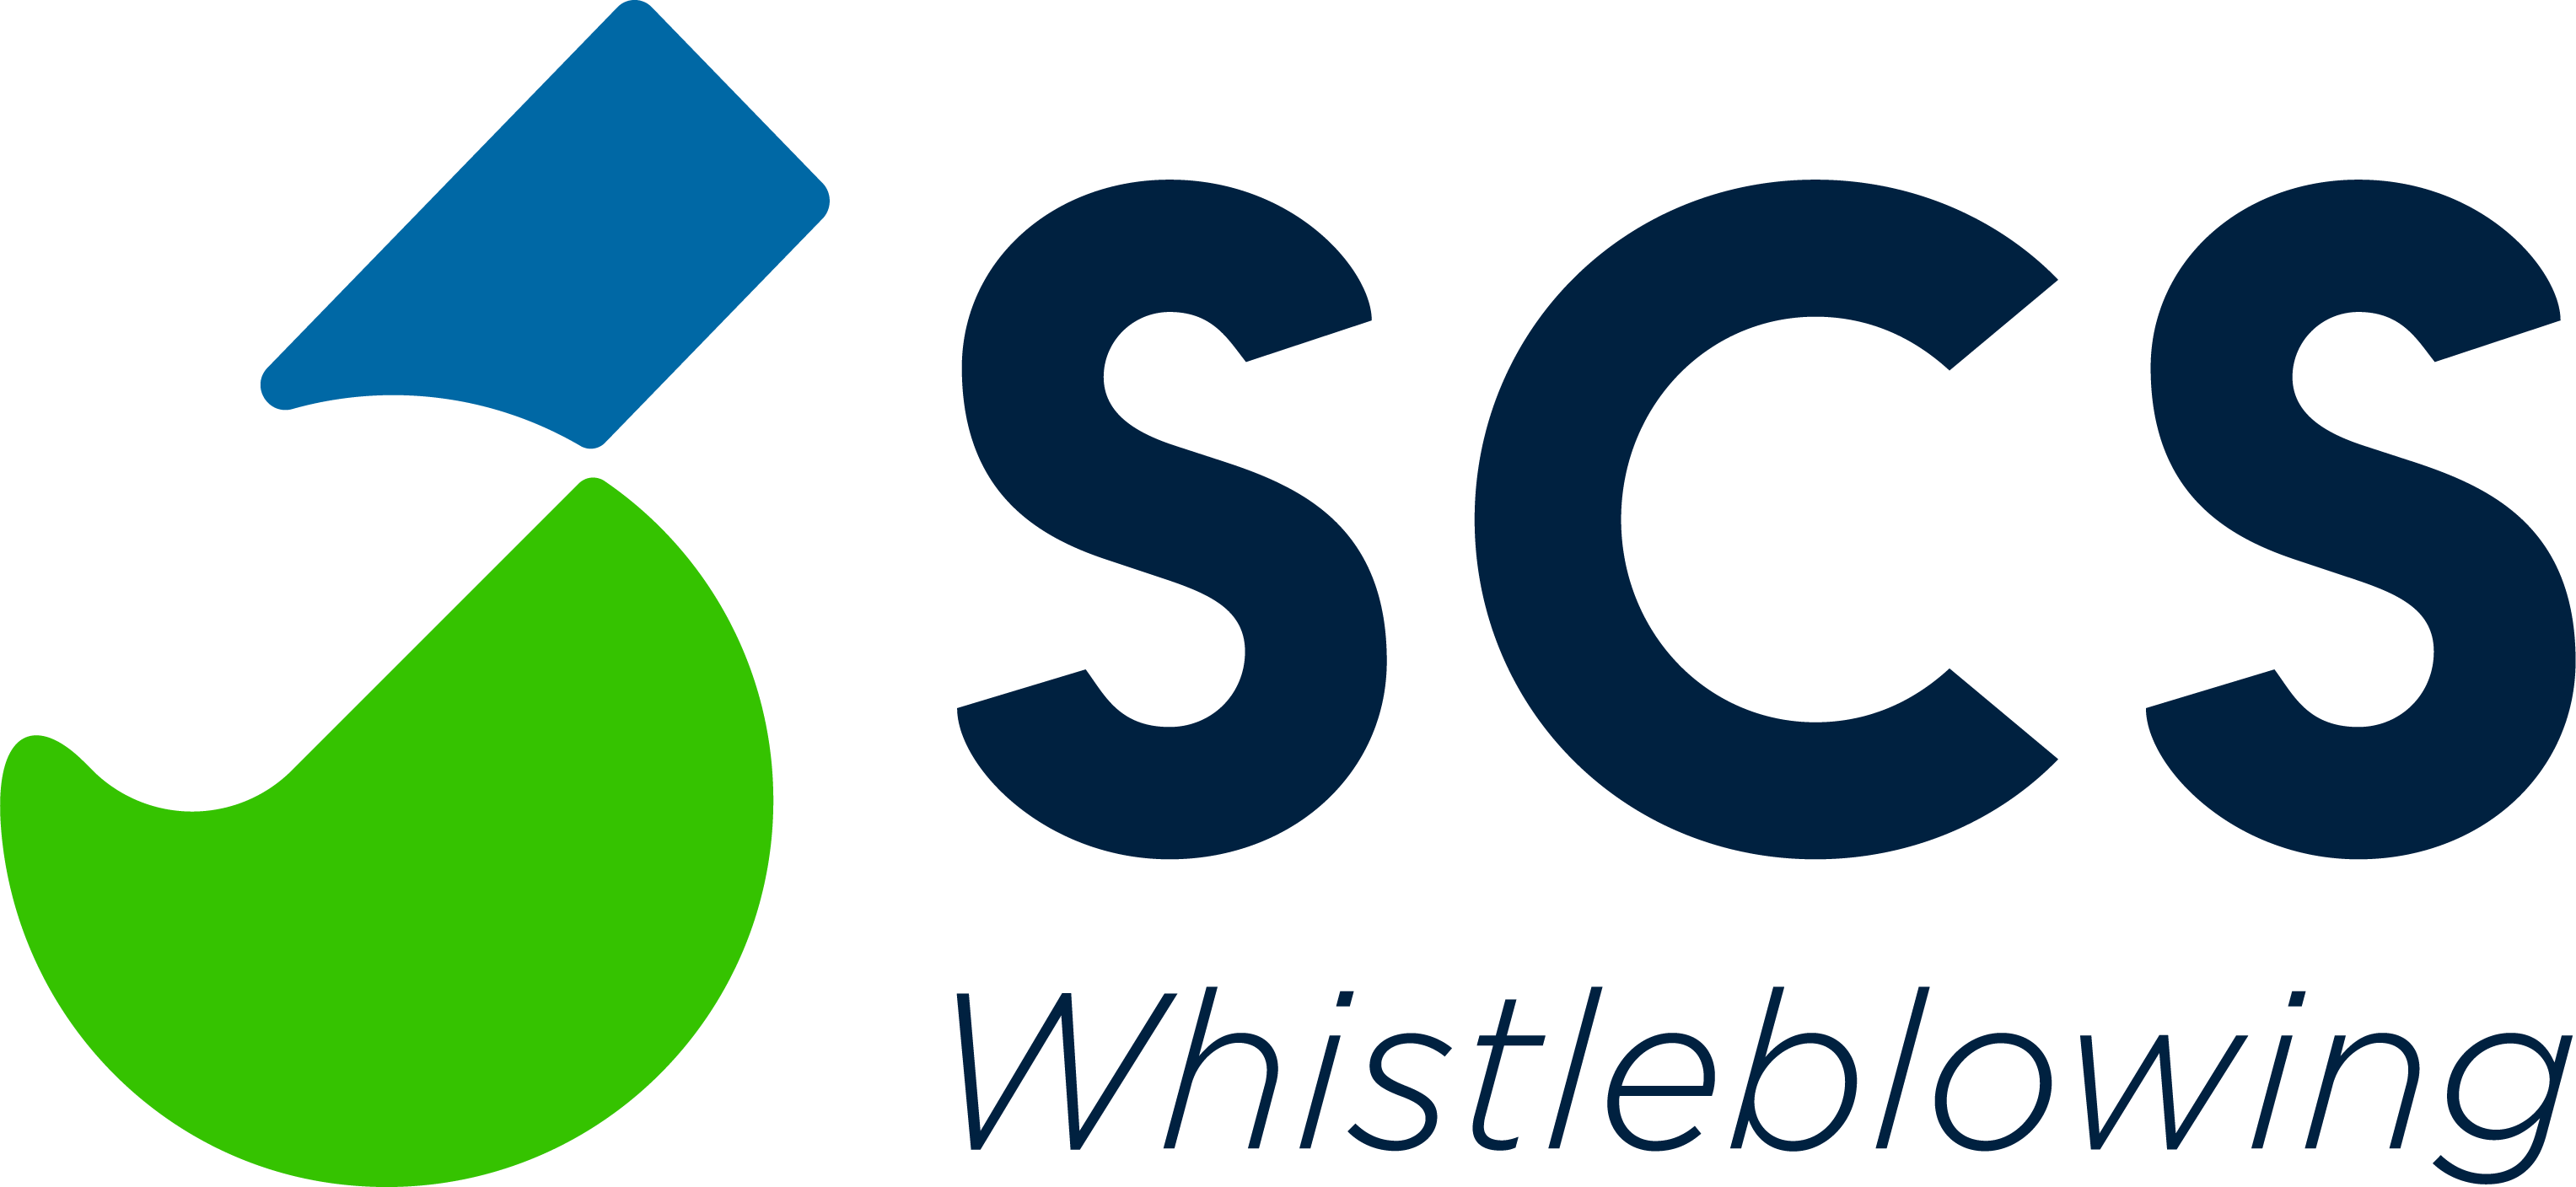 logo di prodotto scs whistleblowing